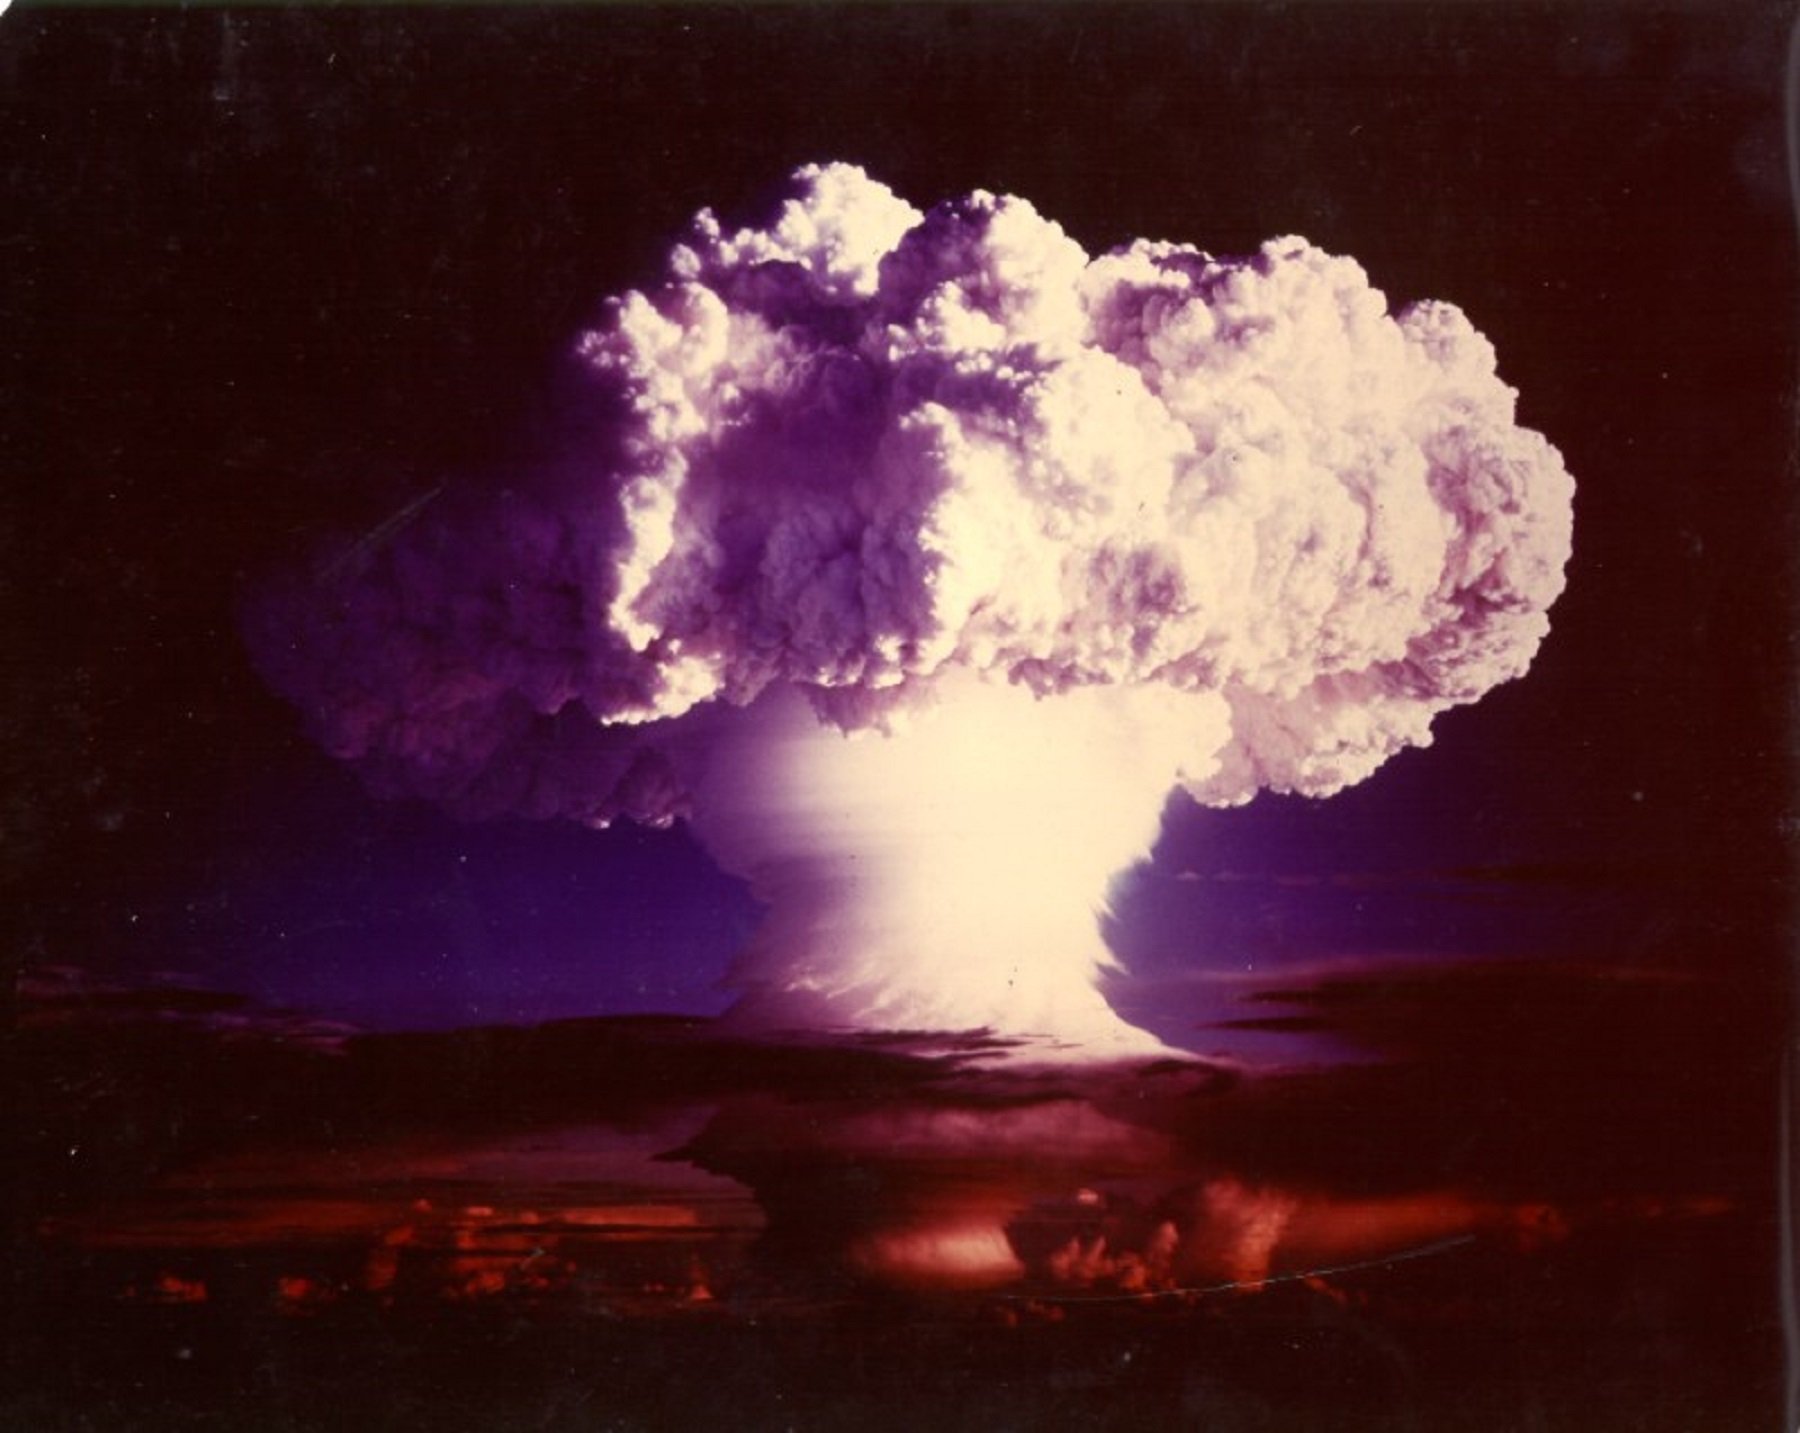 L'Antropocè, la nova era geològica amb bombes nuclears i contaminació